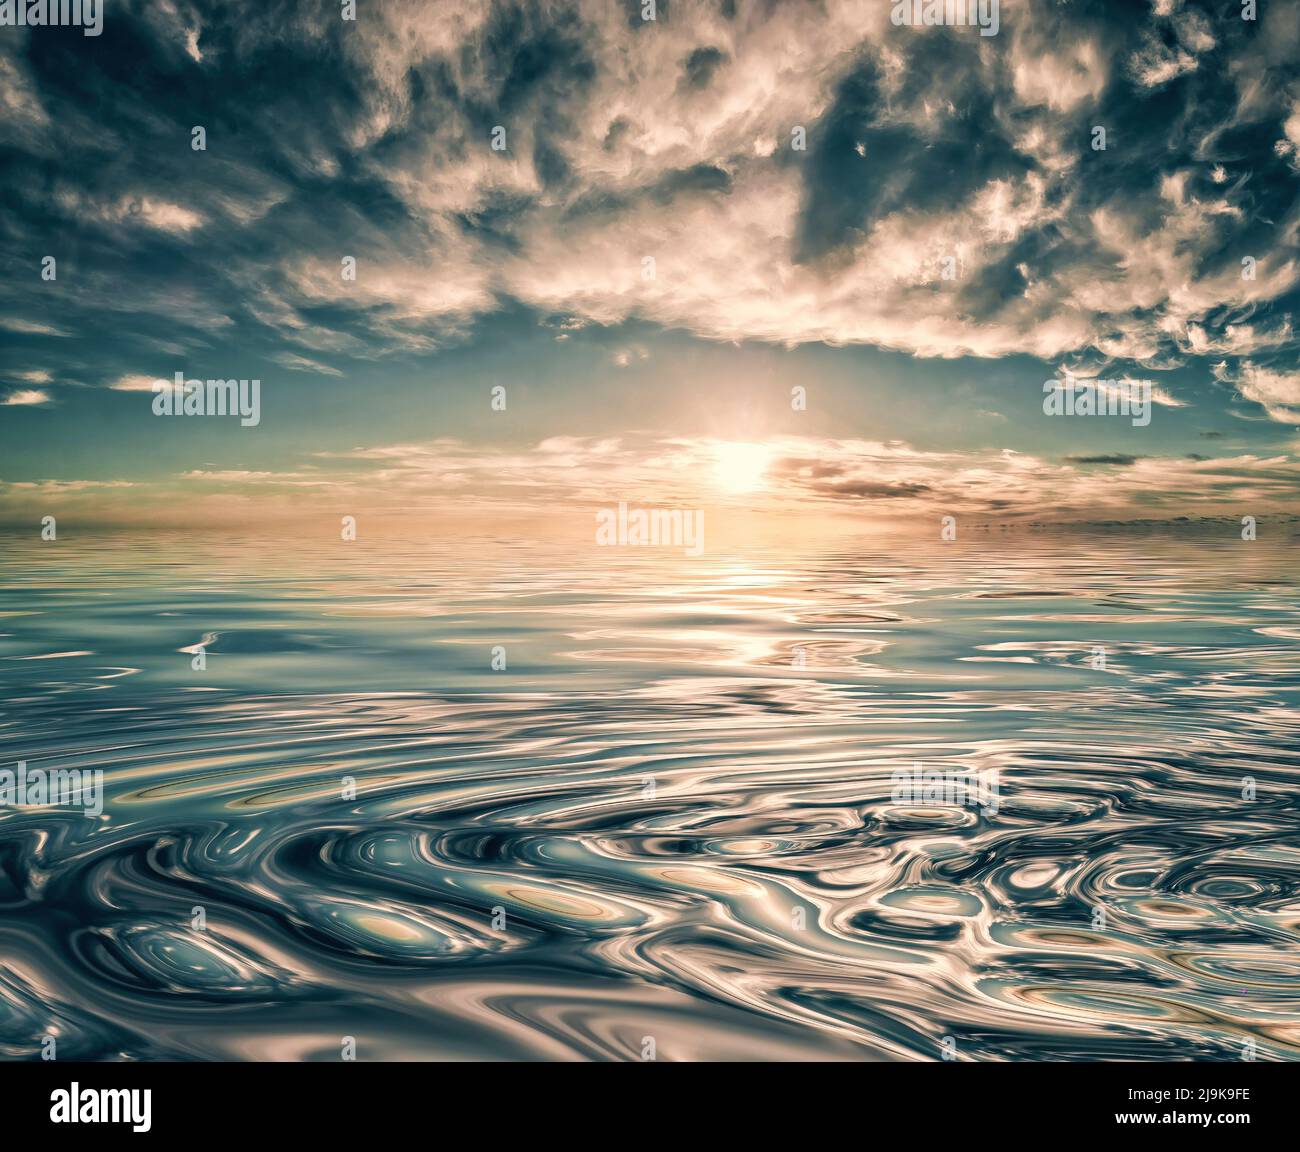 Sonnenuntergang oder Sonnenaufgang und Wolken spiegeln sich in Wellen auf dem Wasser Stockfoto